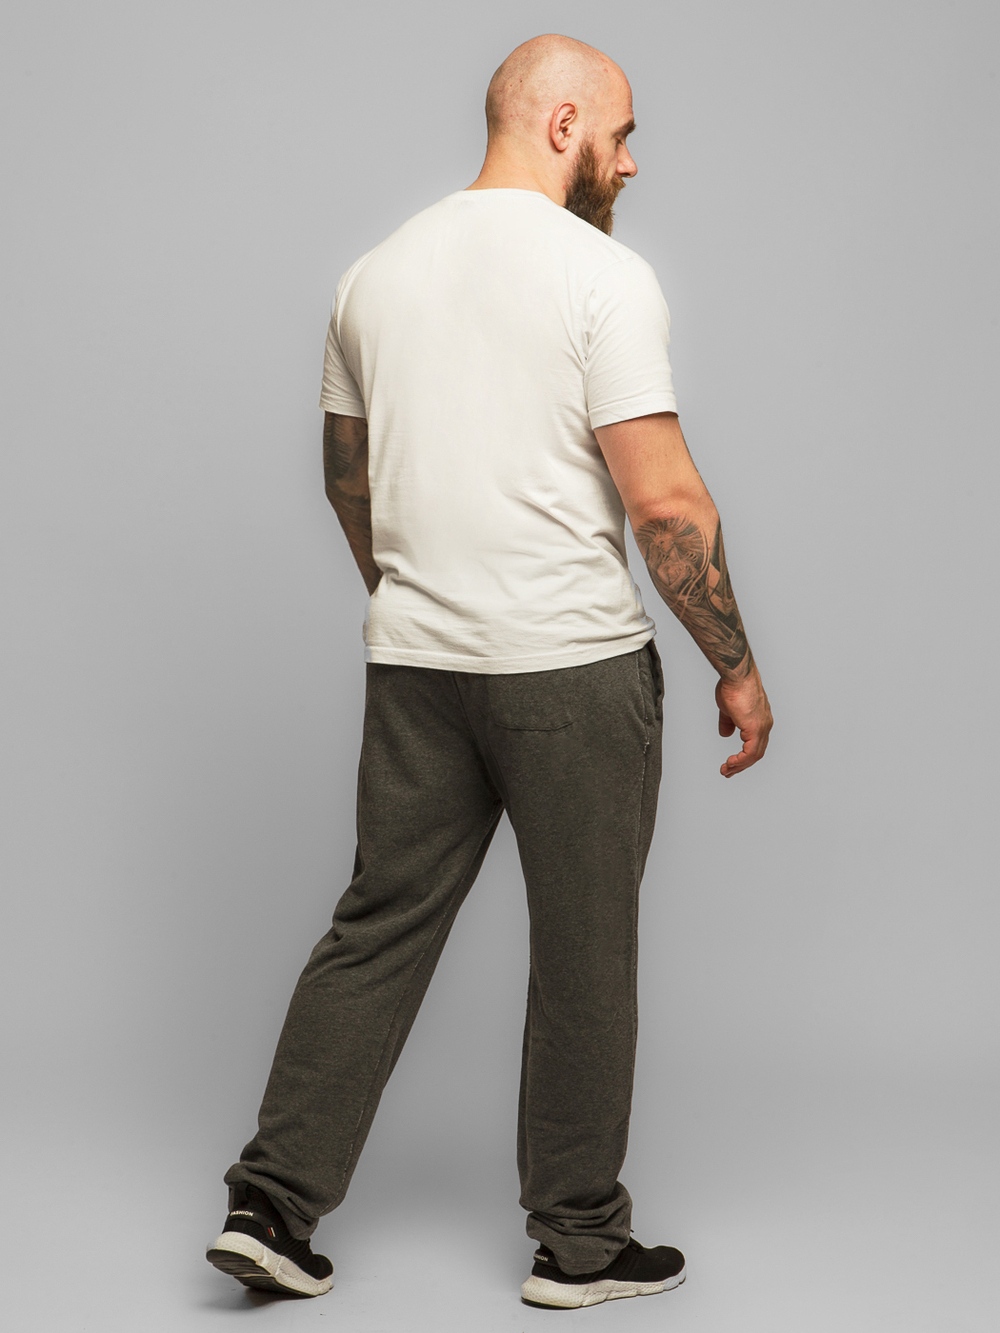 Трикотажные прямые брюки Abercrombie & Fitch ABT5